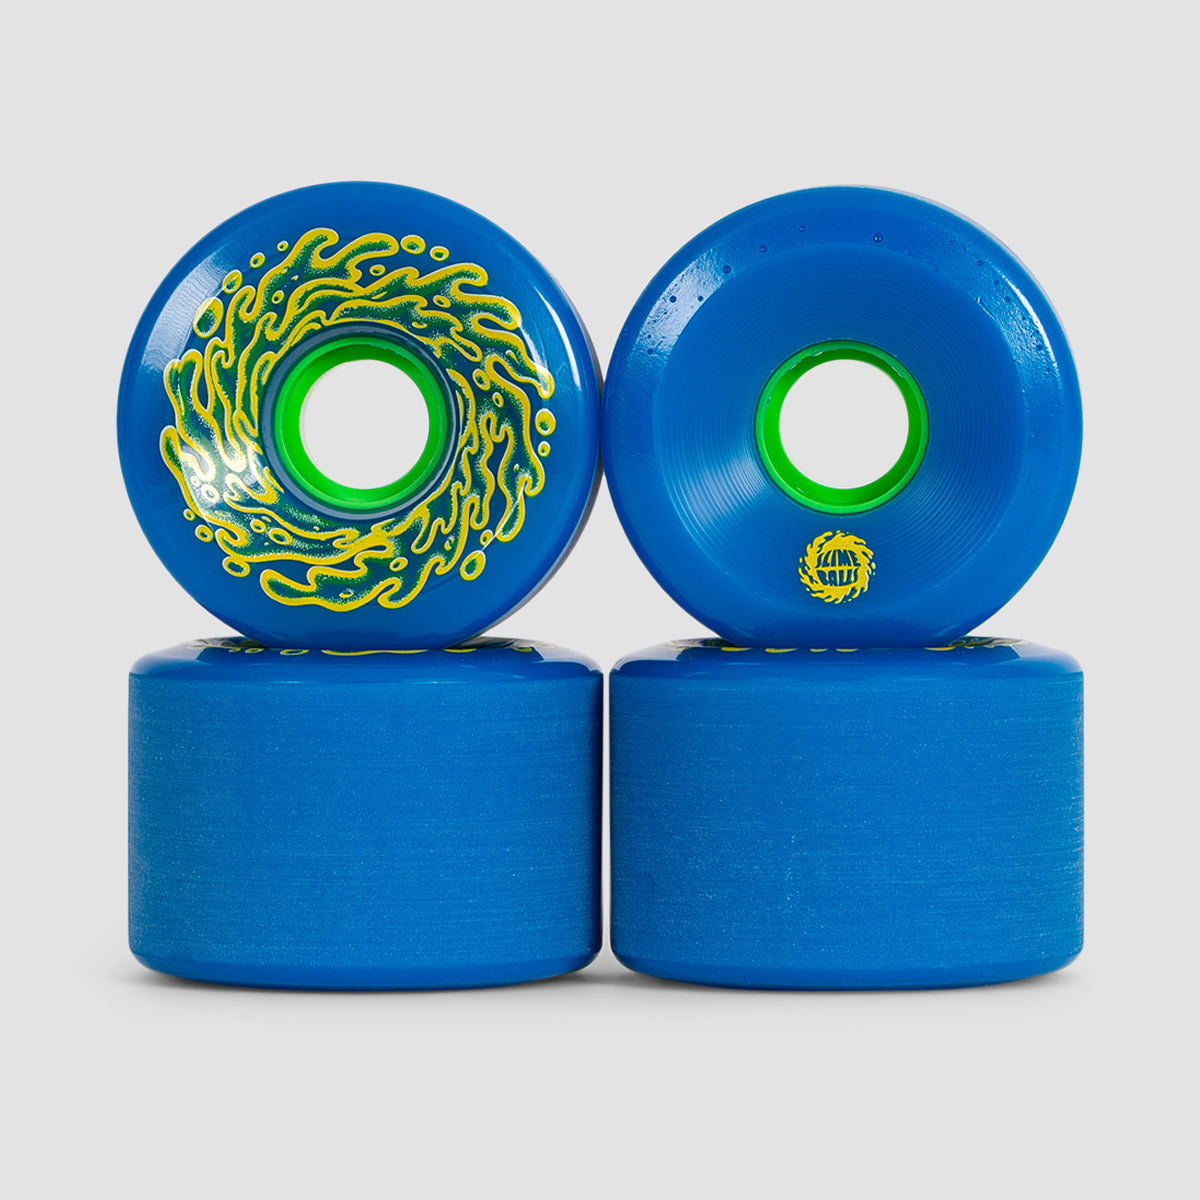 Slime Balls OG Slime 78a Skateboard Wheels Blue/Green 66mm